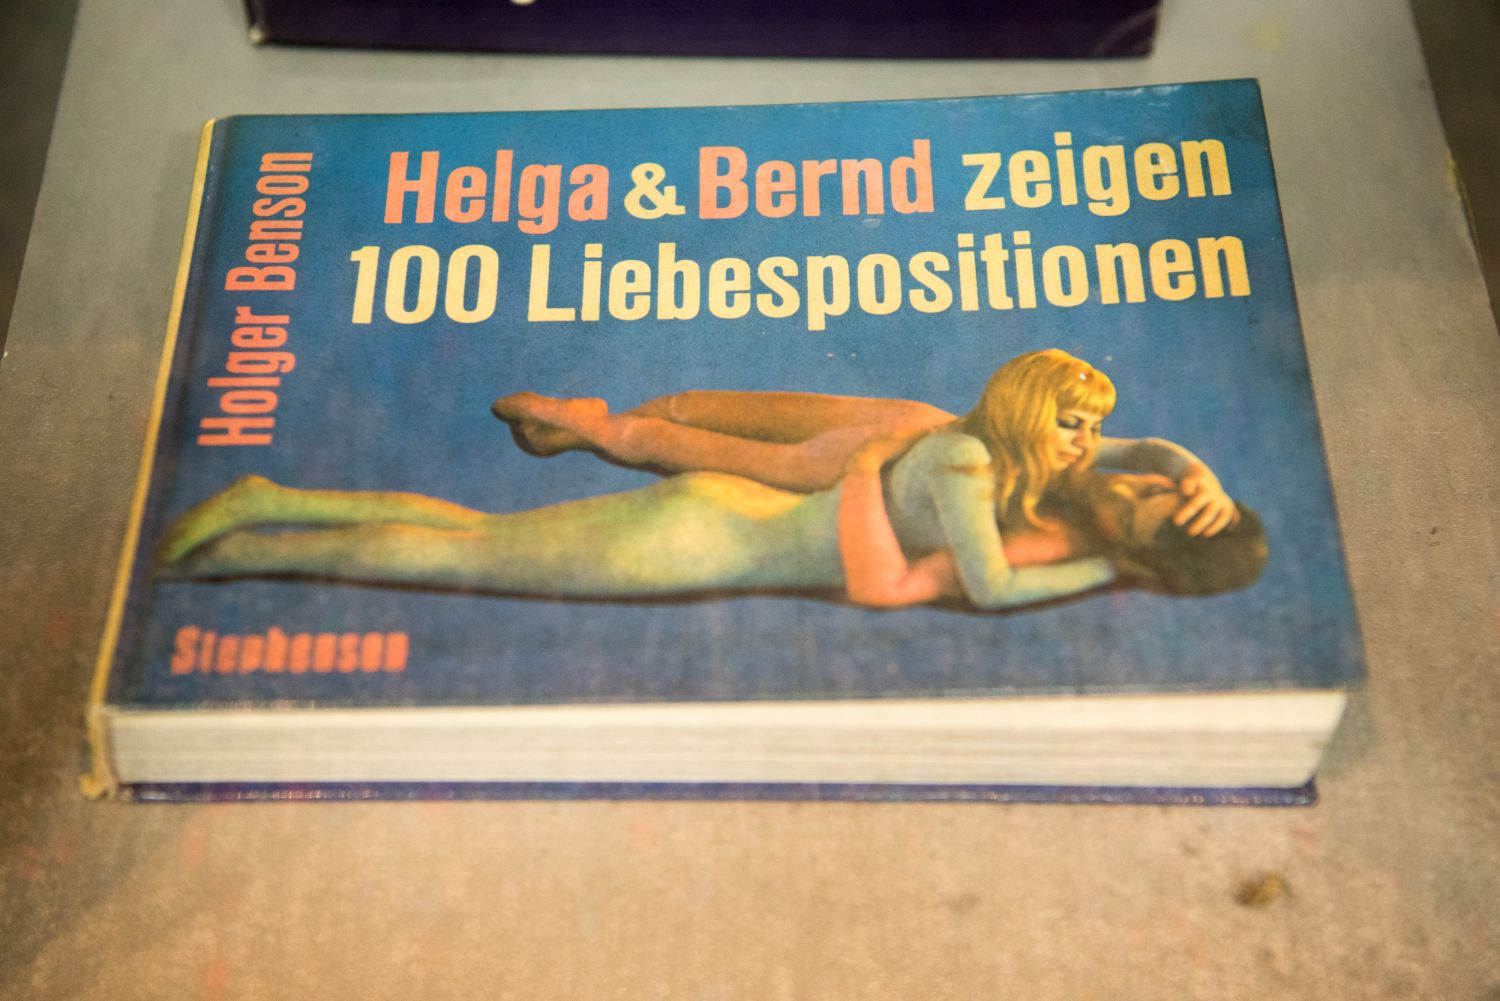 Die Helga & Bernd-Bücher gehören zu den Klassikern aus dem hauseigenen Erotikverlag.